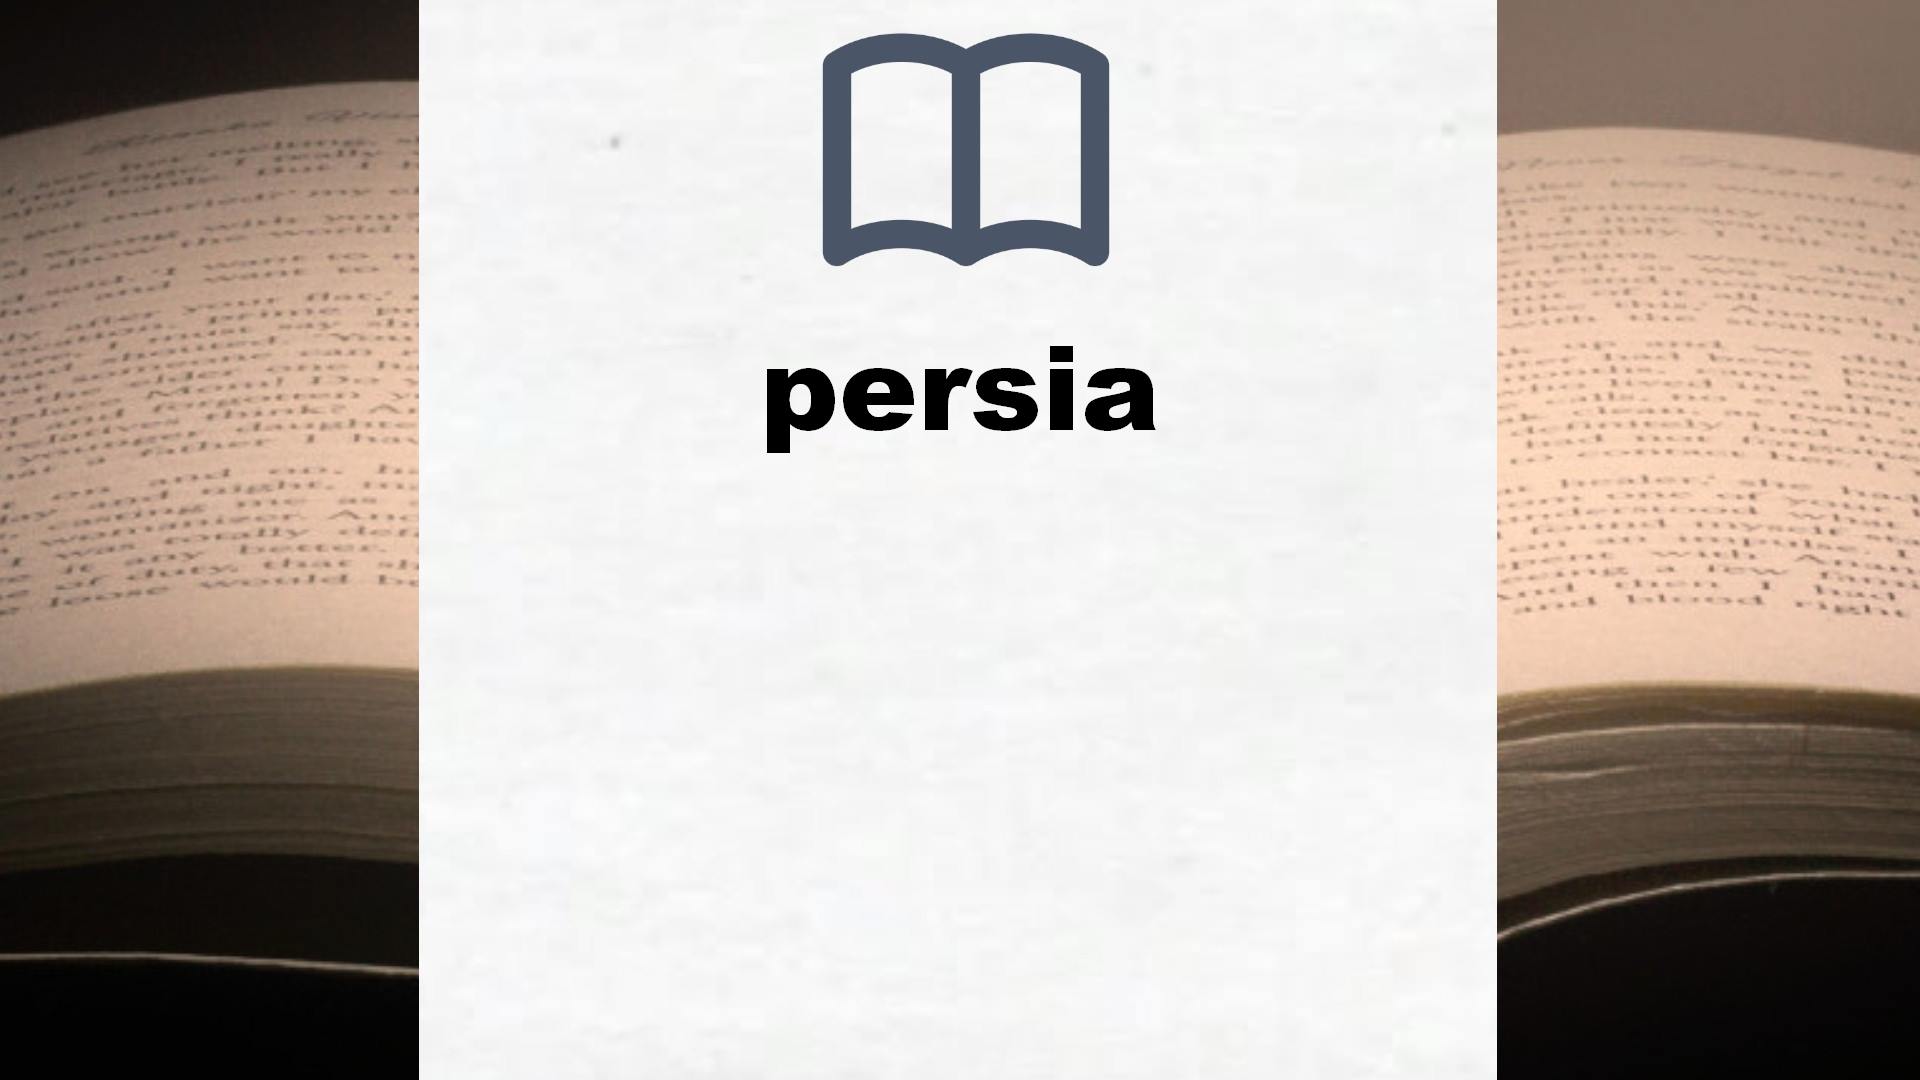 Libros sobre persia